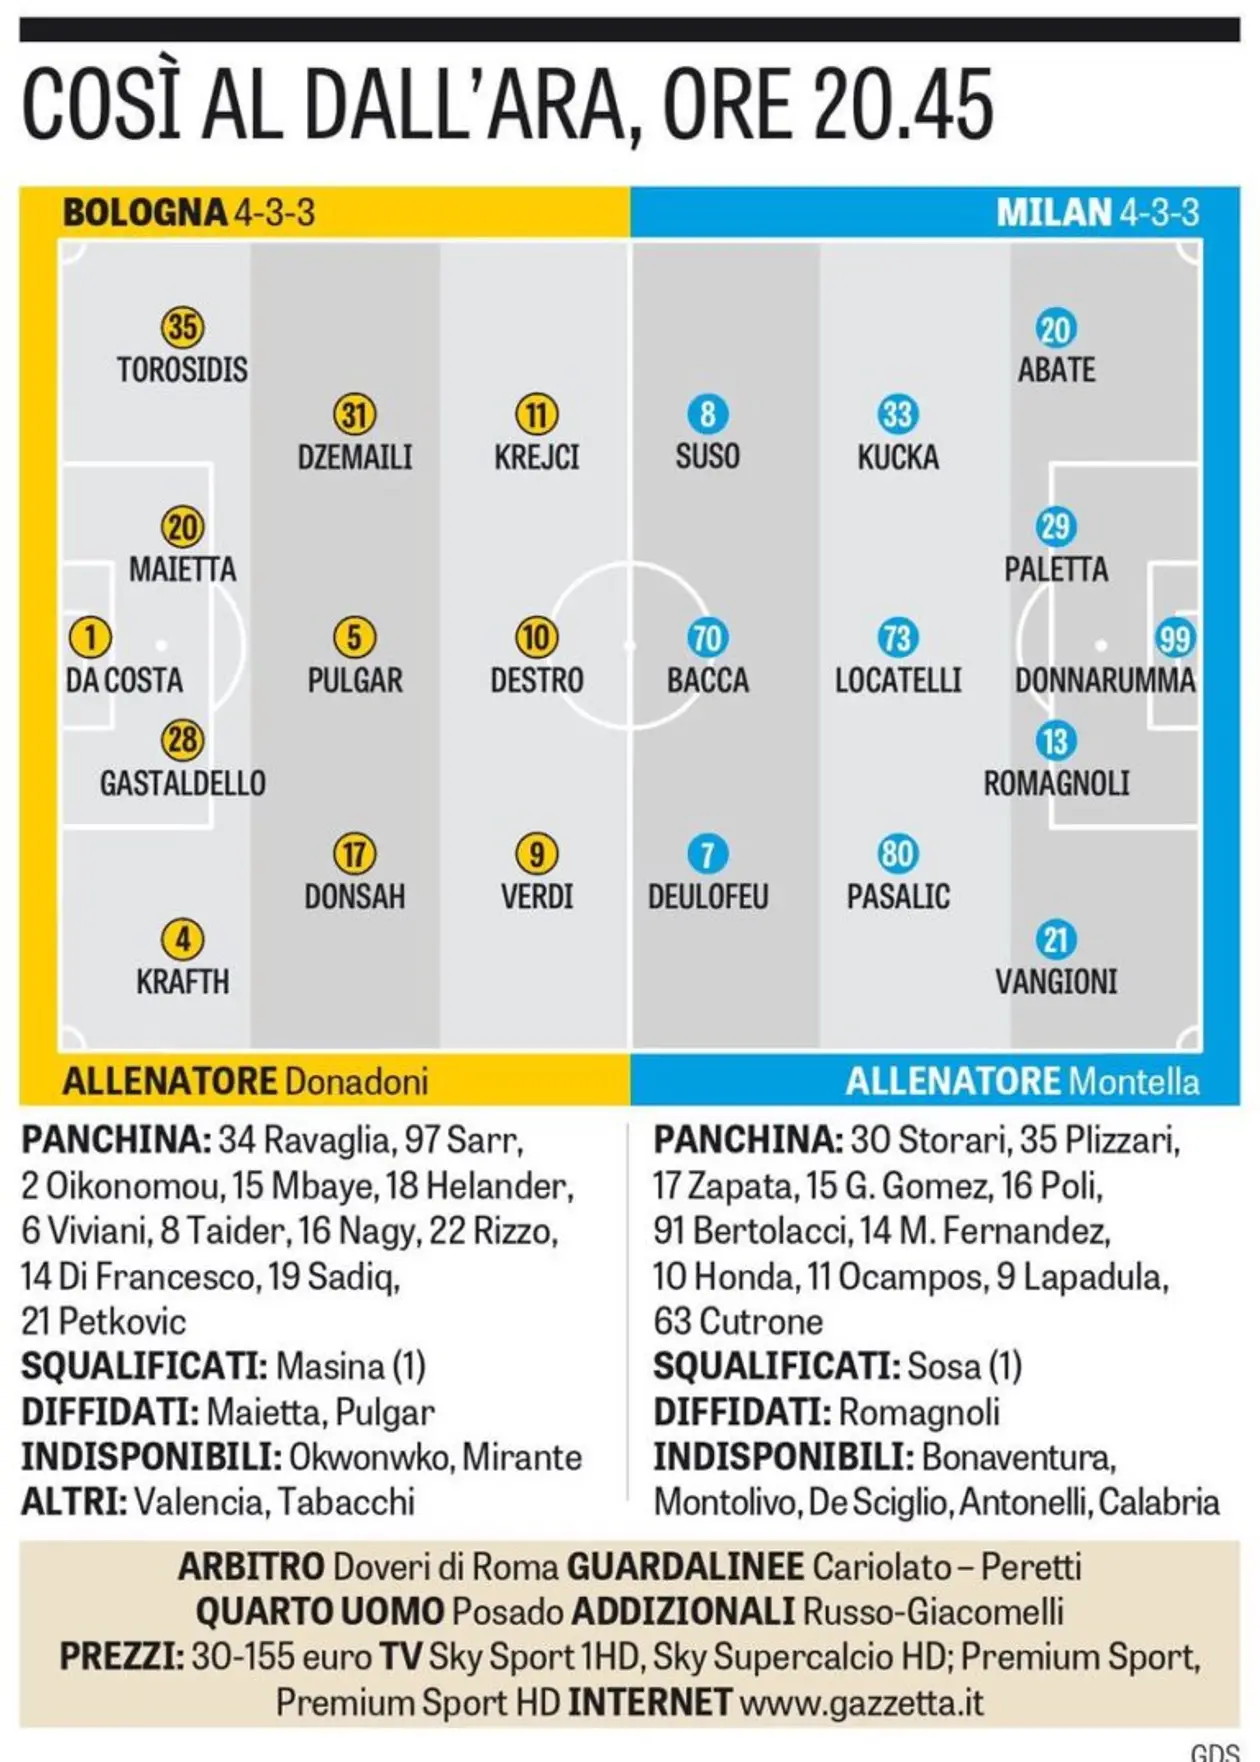 «Болонья» — «Милан»: вероятные стартовые составы от GdS